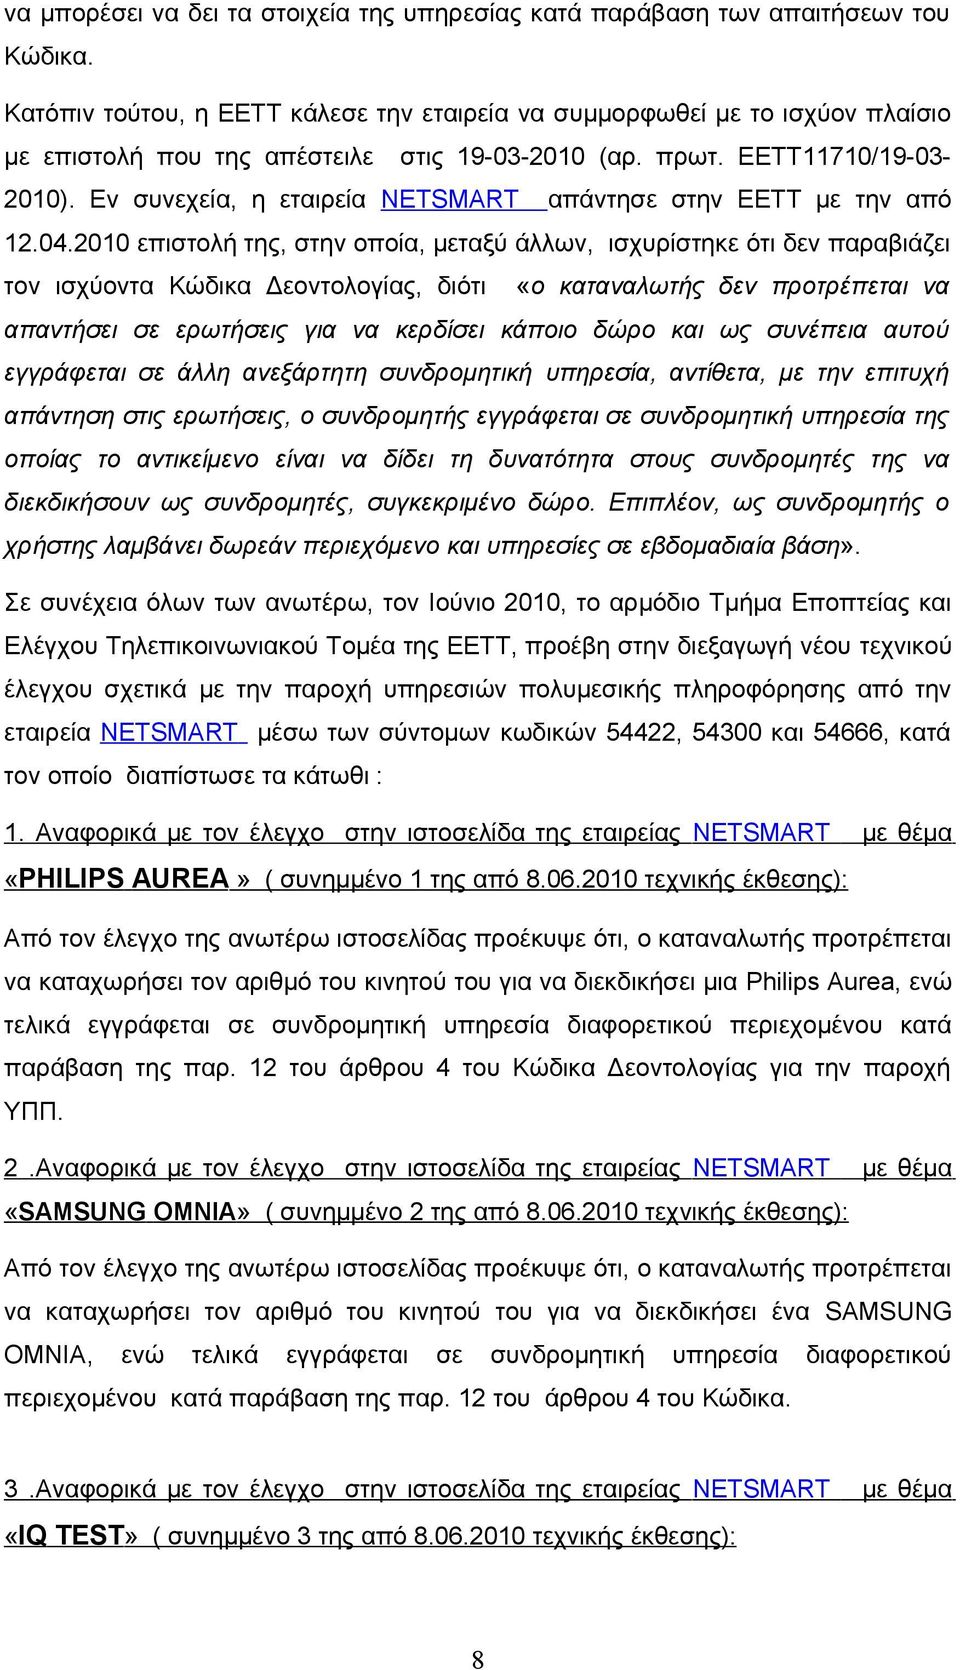 Εν συνεχεία, η εταιρεία NETSMART απάντησε στην ΕΕΤΤ με την από 12.04.